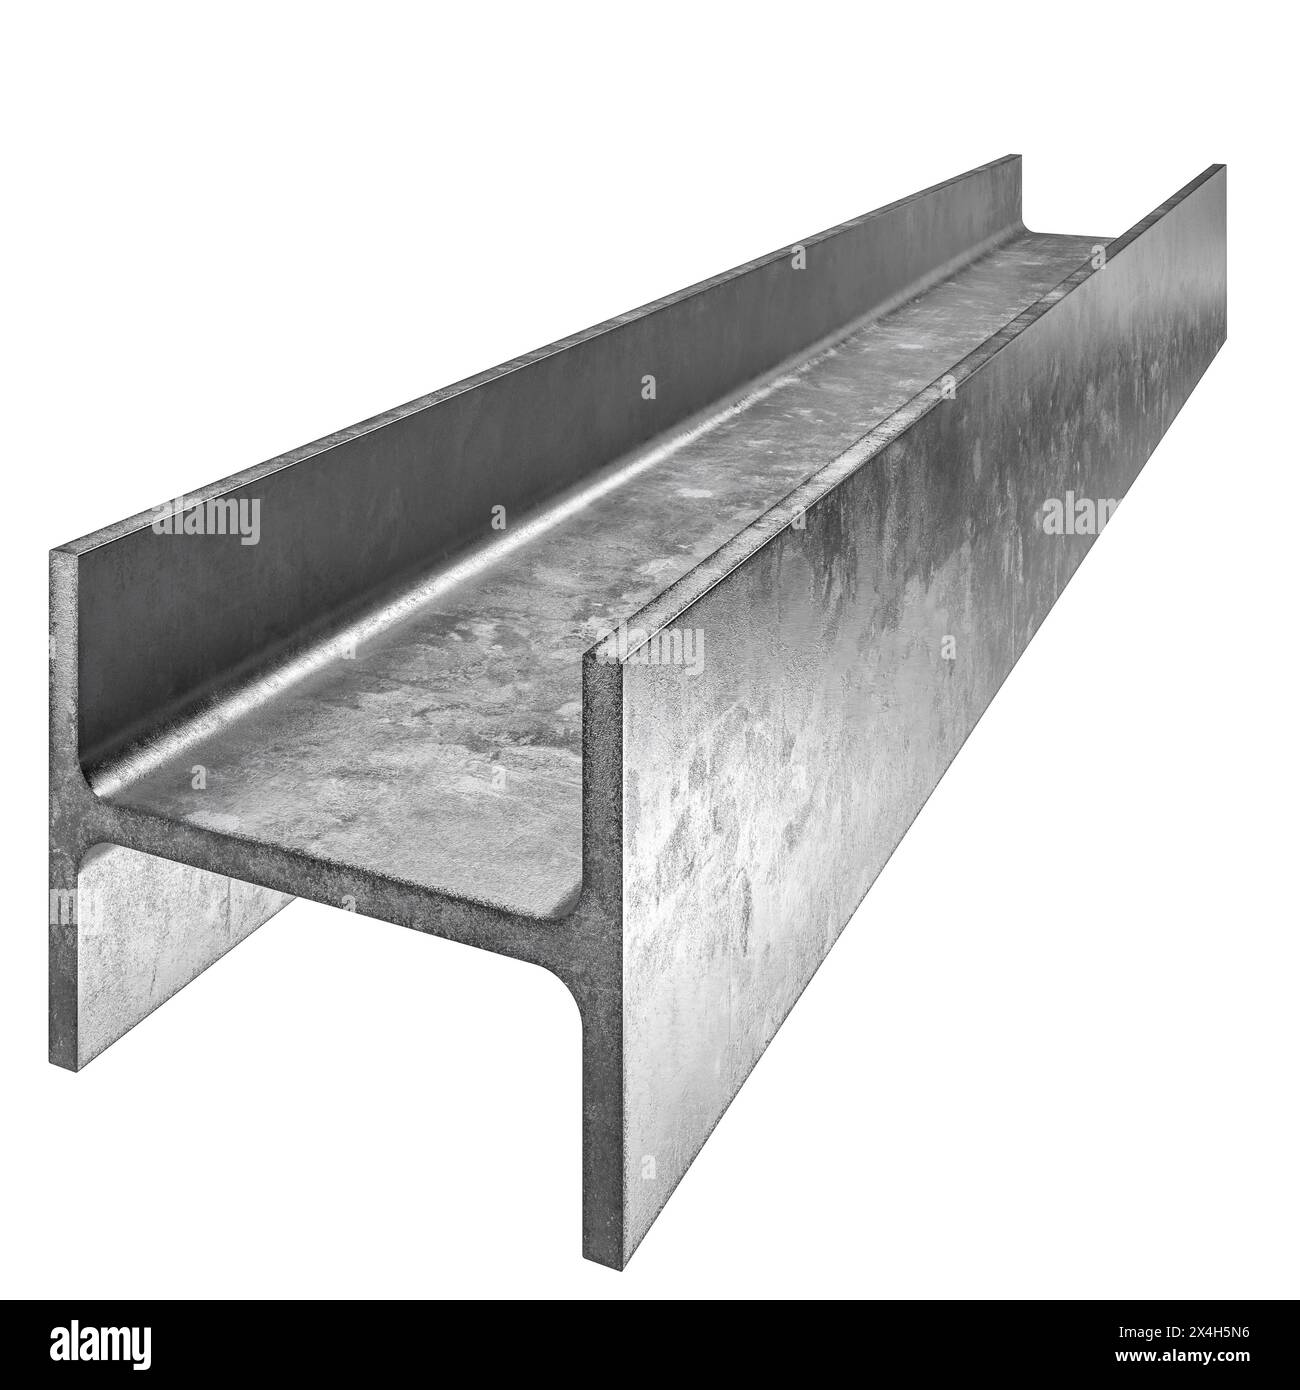 Immagine di alta qualità di un fascio i metallico utilizzato per la costruzione, isolato su uno sfondo bianco Foto Stock